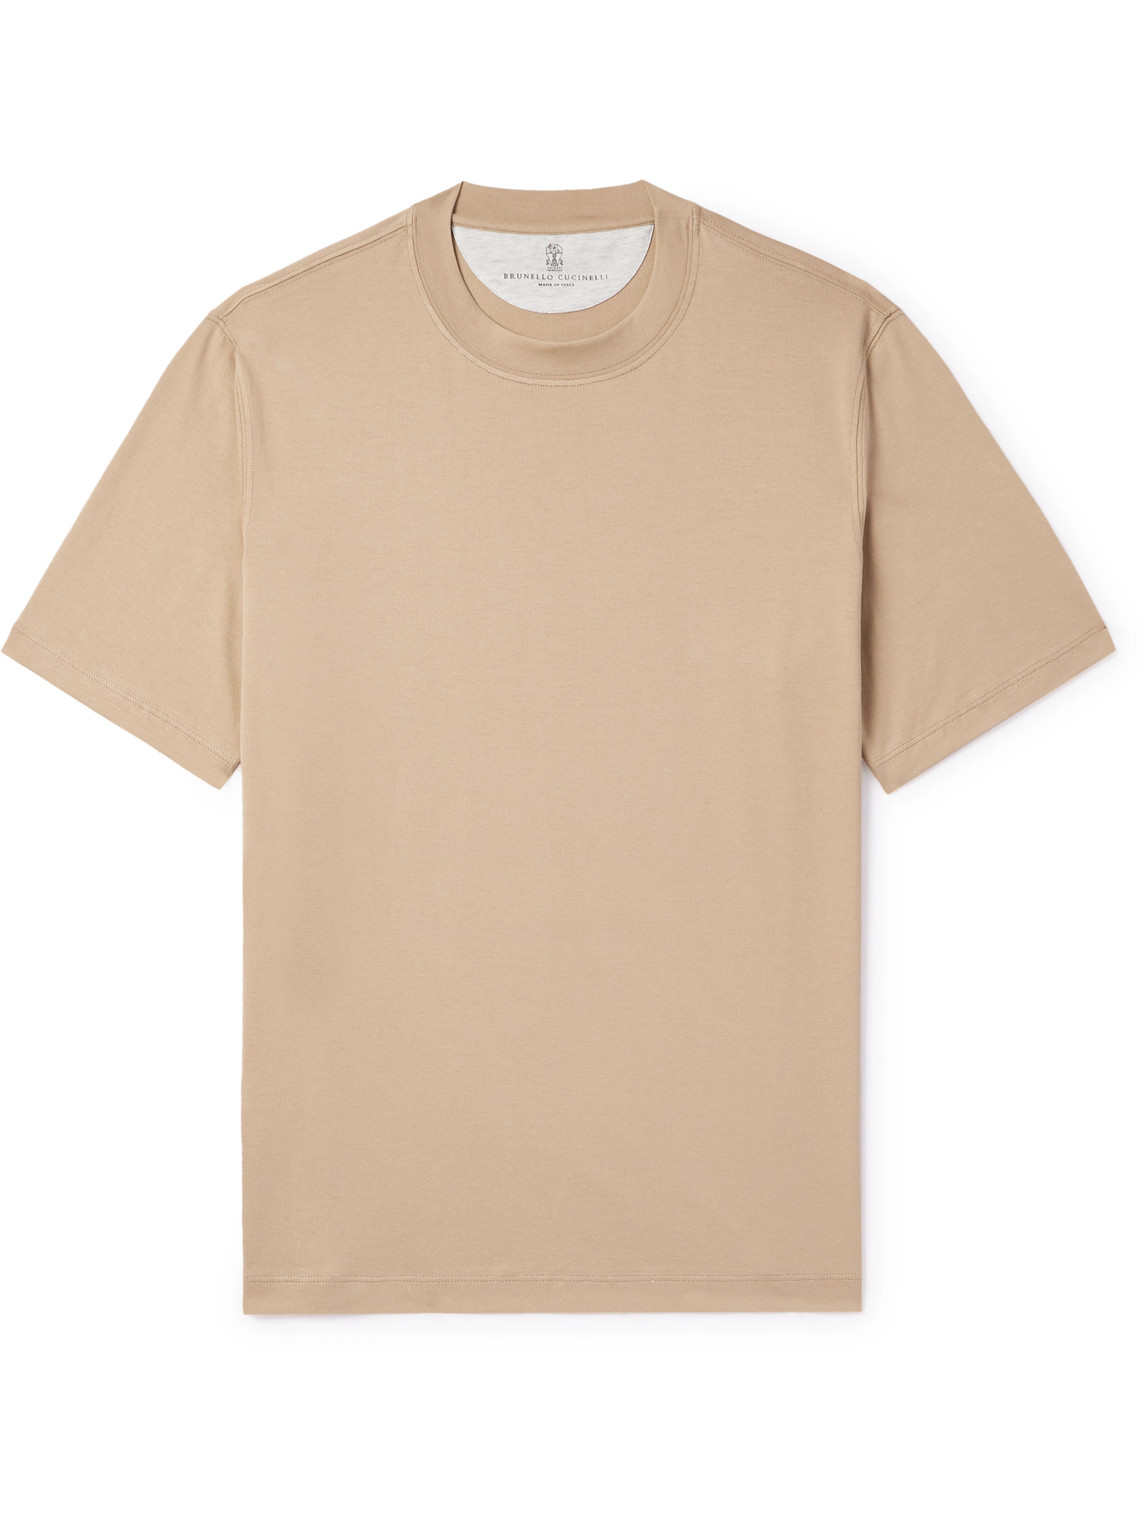 Brunello Cucinelli - Cotton-Jersey T-Shirt - Men - Neutrals - S von Brunello Cucinelli